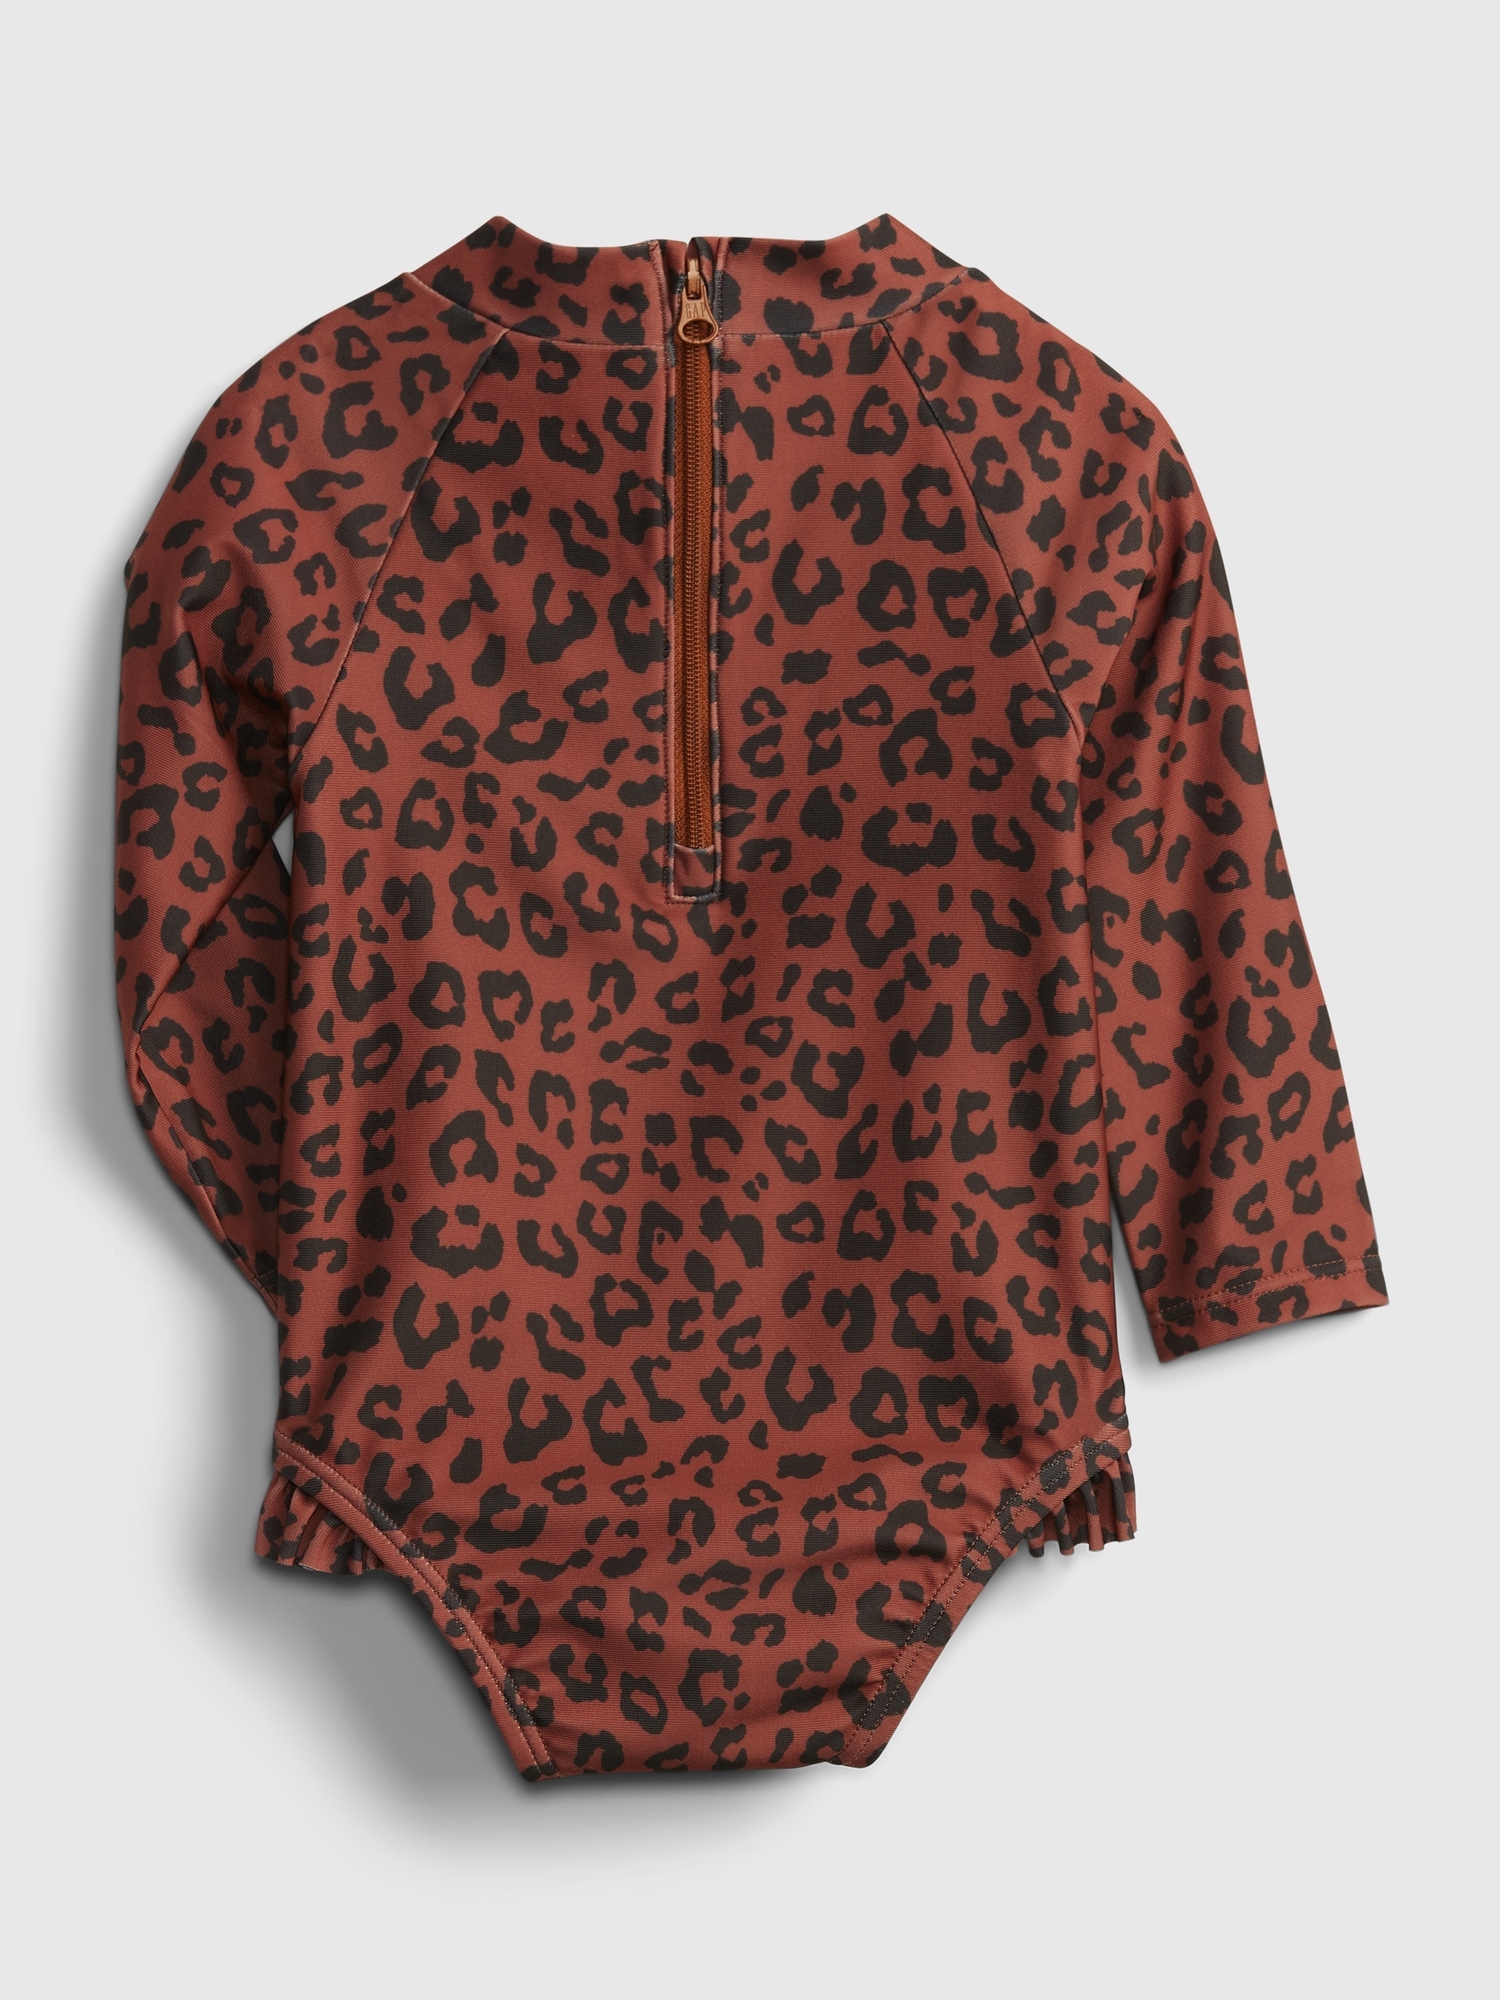 Leopard Print Zip Front Bathing Suit - M / 1#